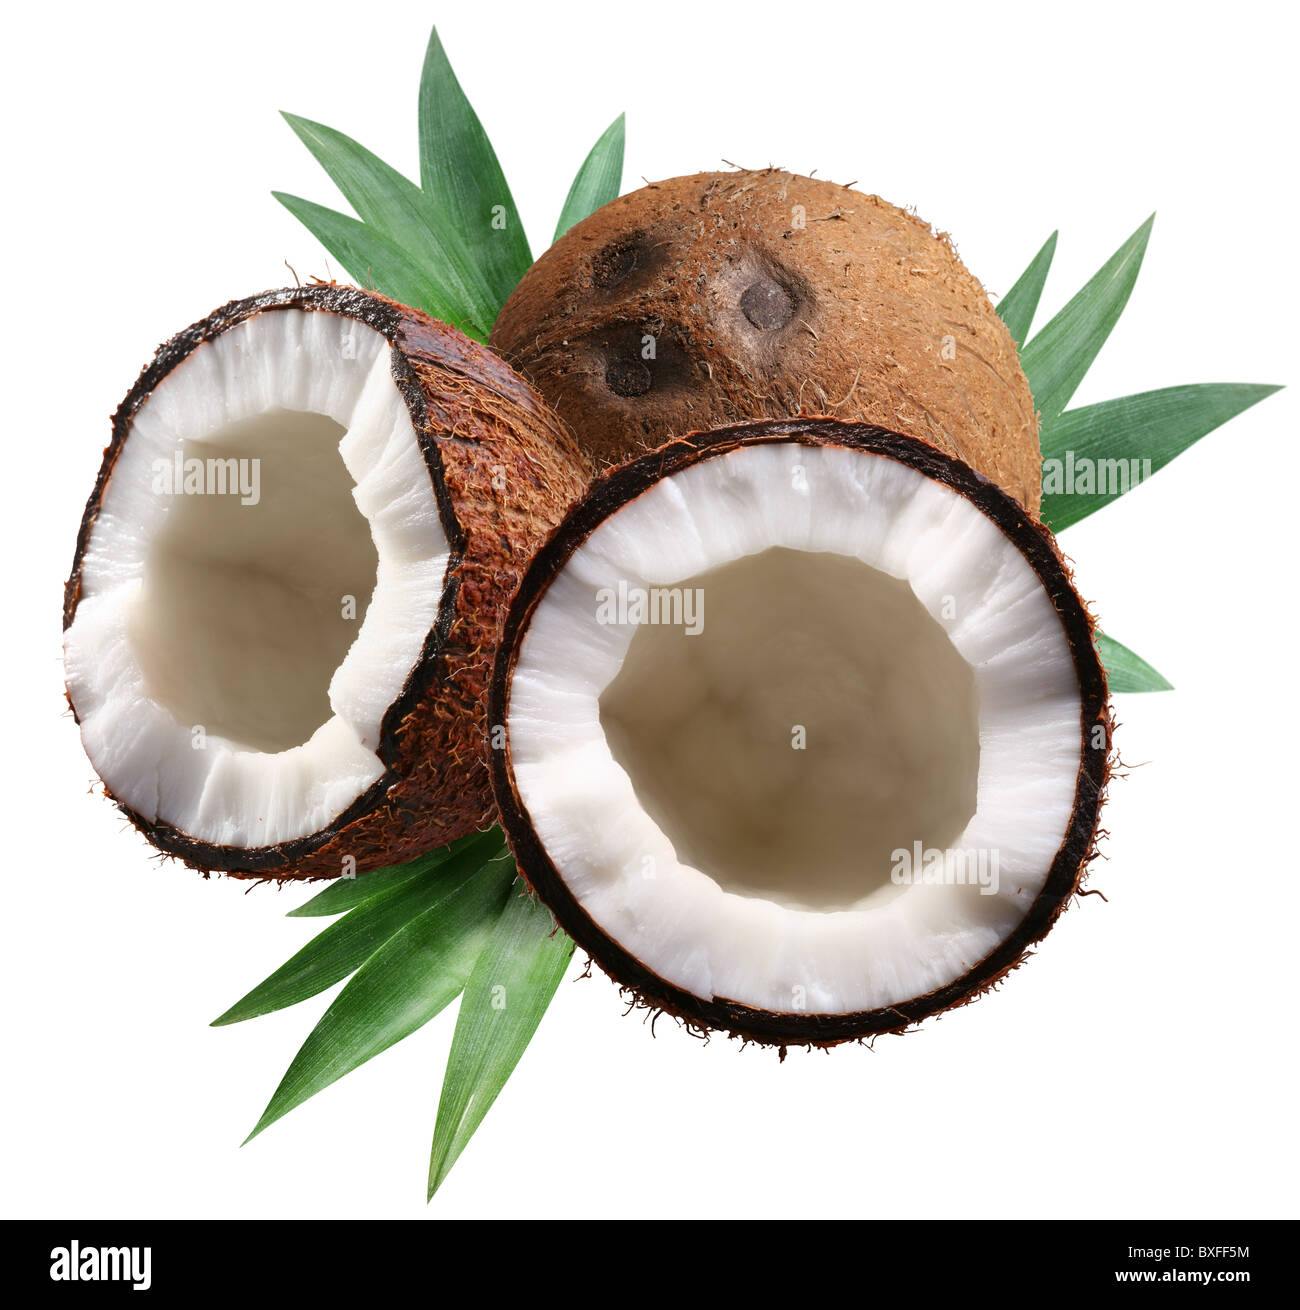 Gehackte Kokosnüsse mit Blättern auf weißem Hintergrund. Datei enthält eine Beschneidungspfade. Stockfoto